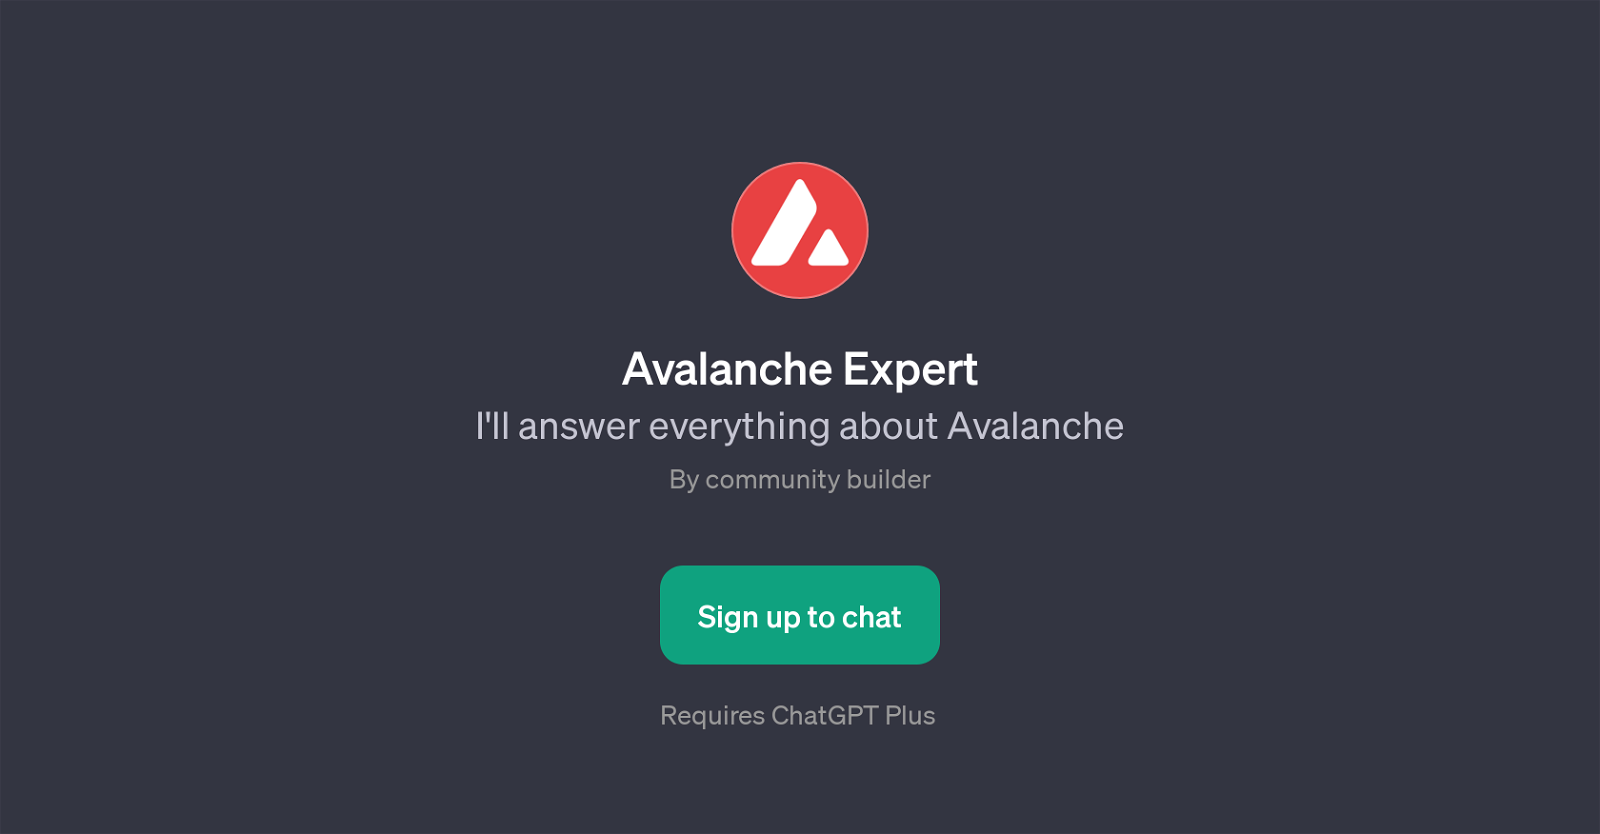 Avalanche Expert website